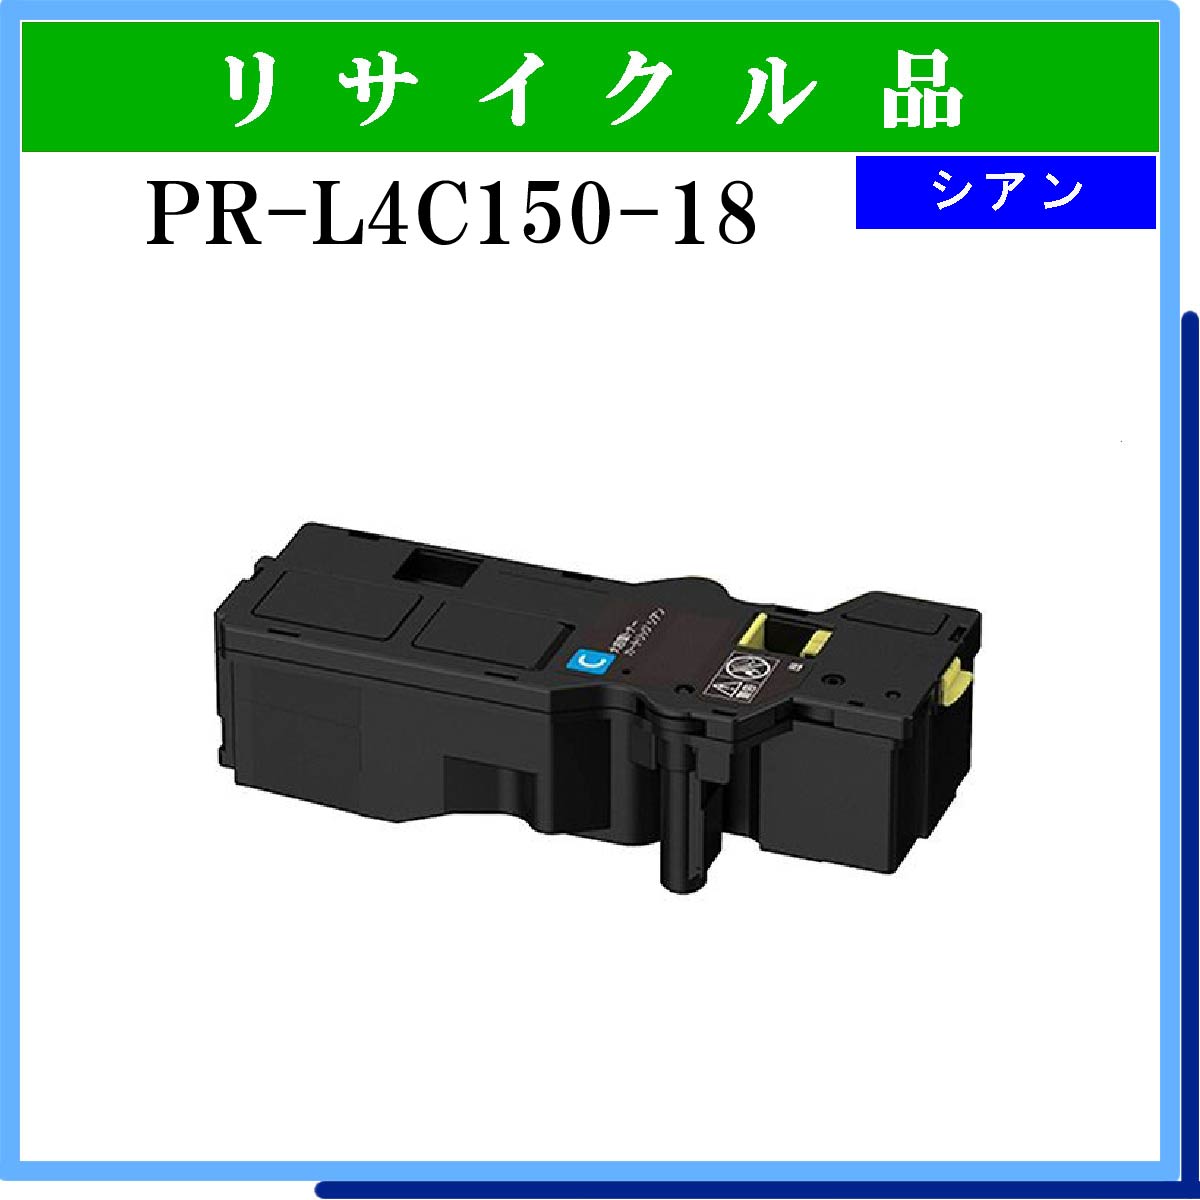 PR-L4C150-18